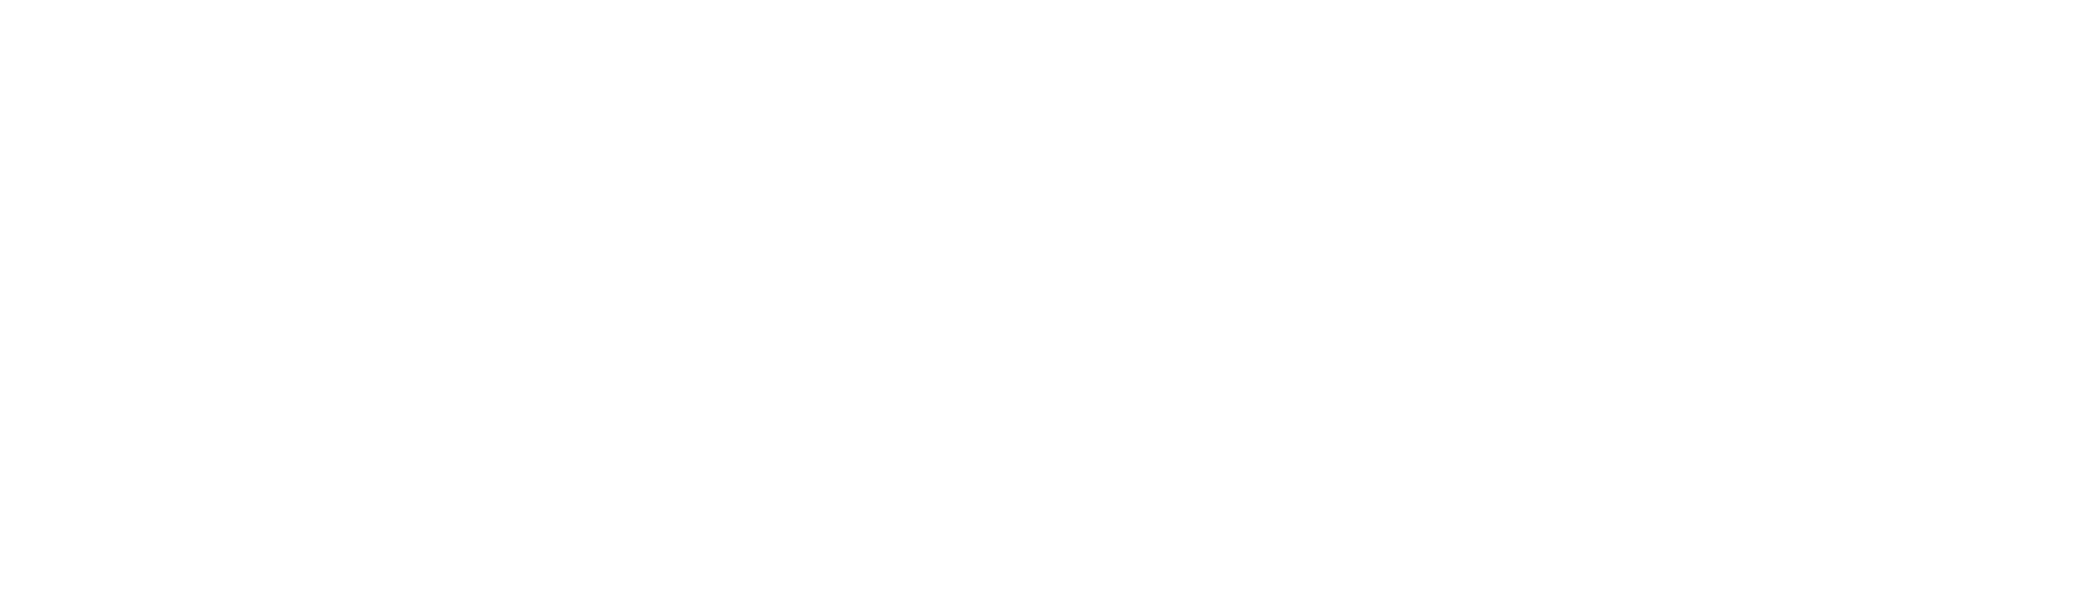 X-CASE GmbH